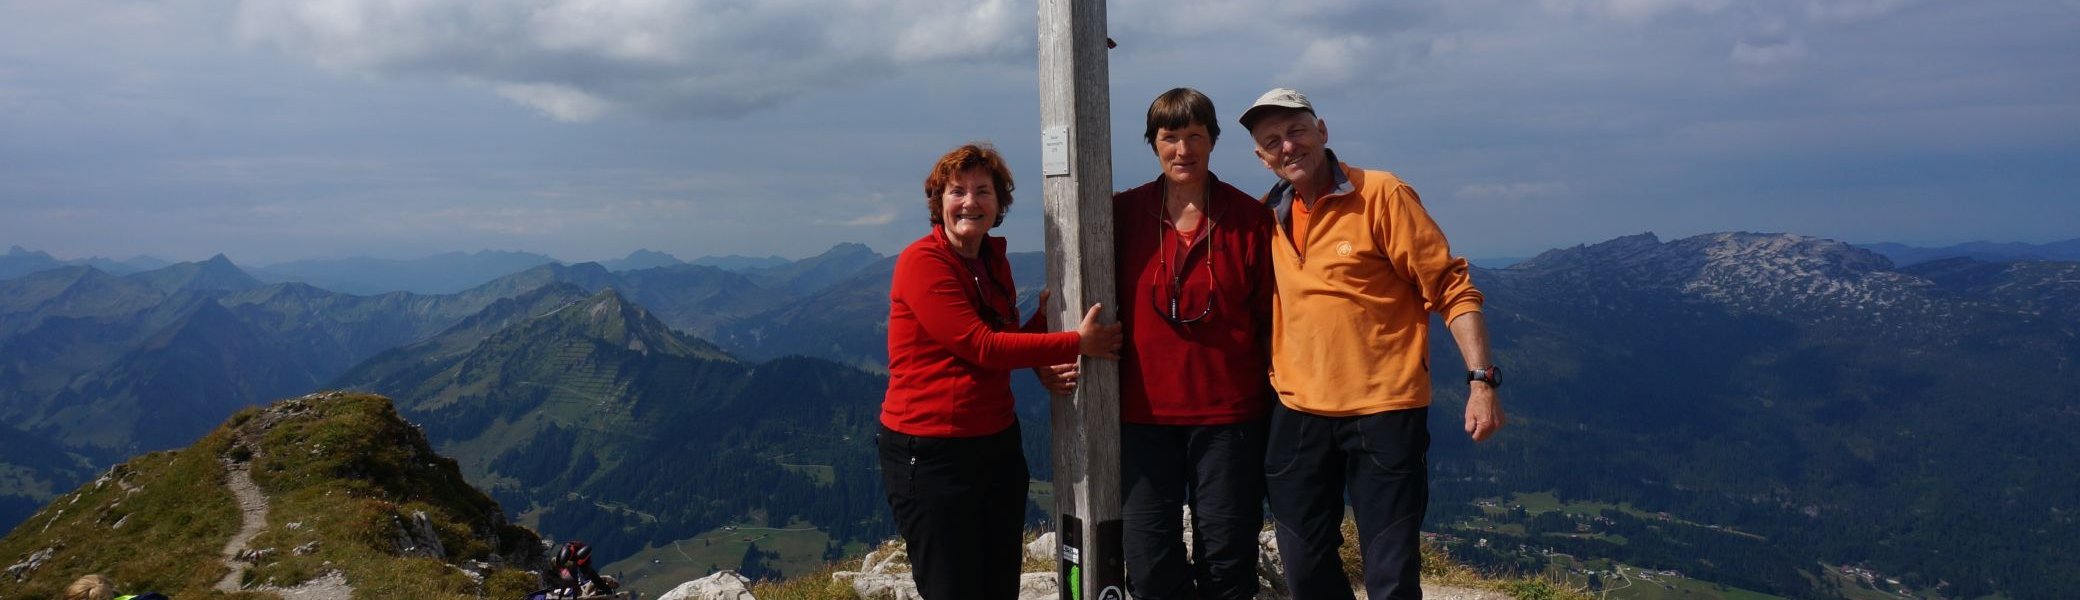 Christina, Beatrix und August auf der Hammerspitze | © DAV Sektion Hameln / Christina Rasokat